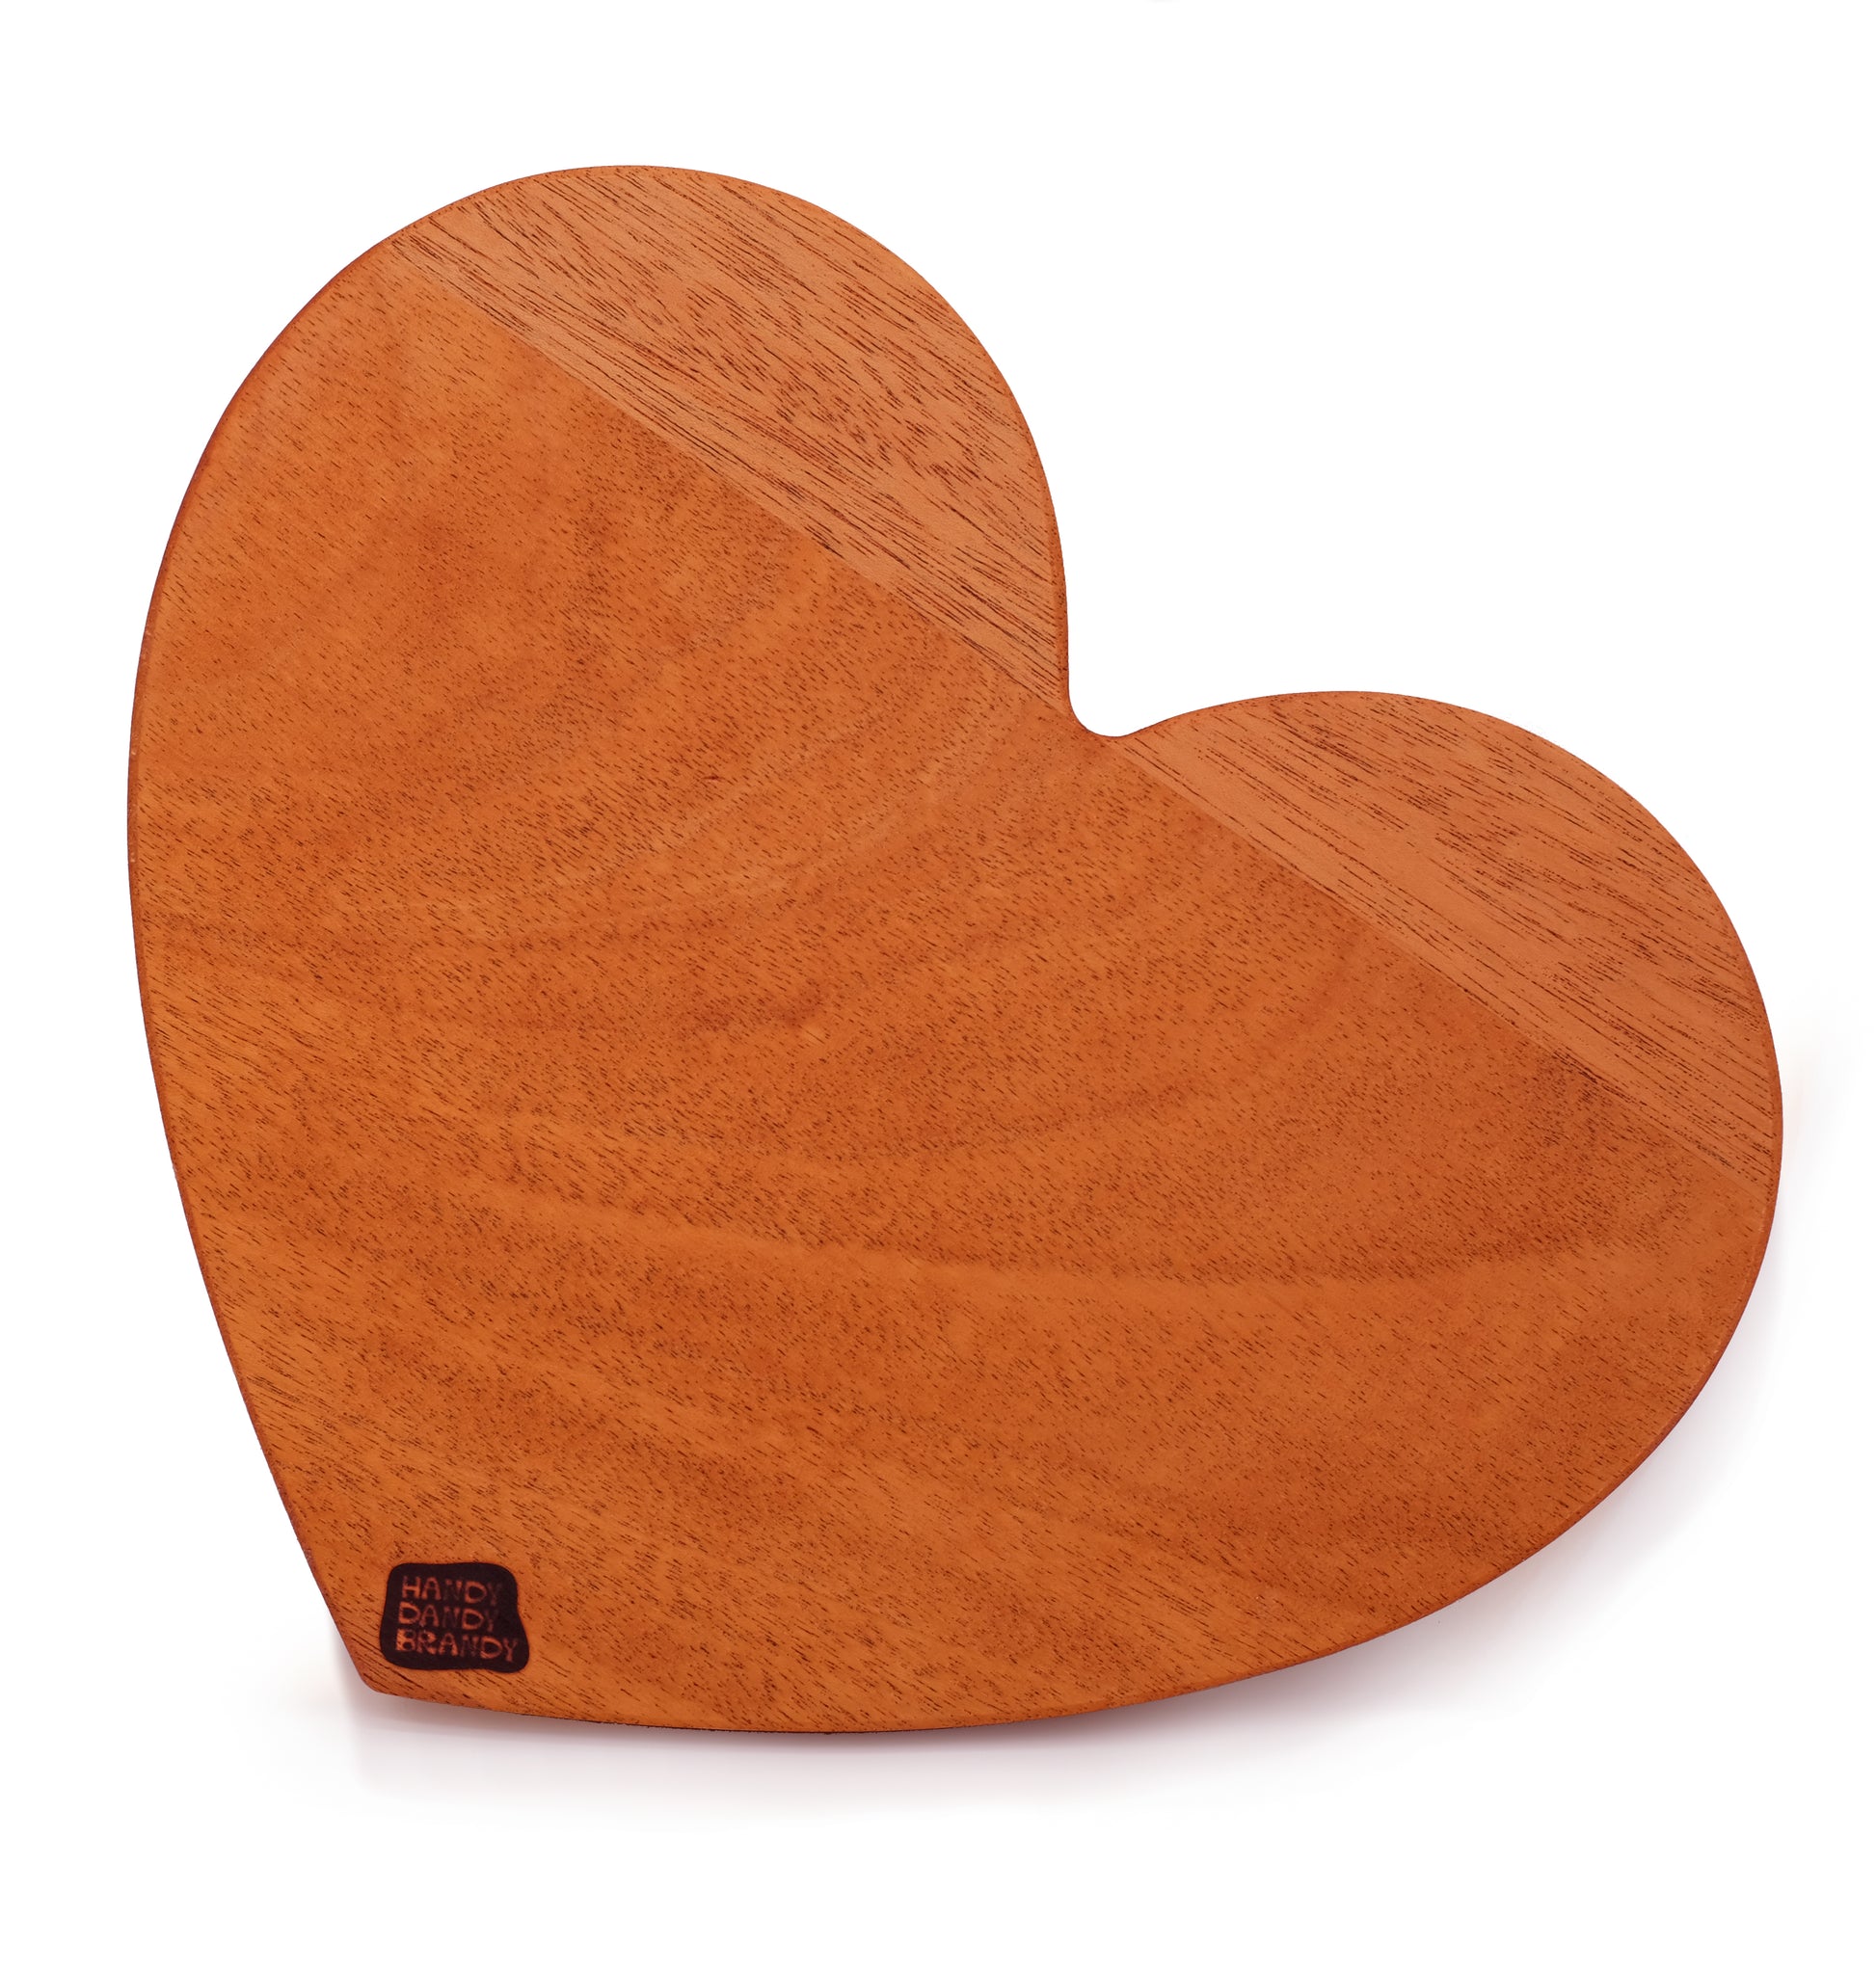 heart shaped cutting board